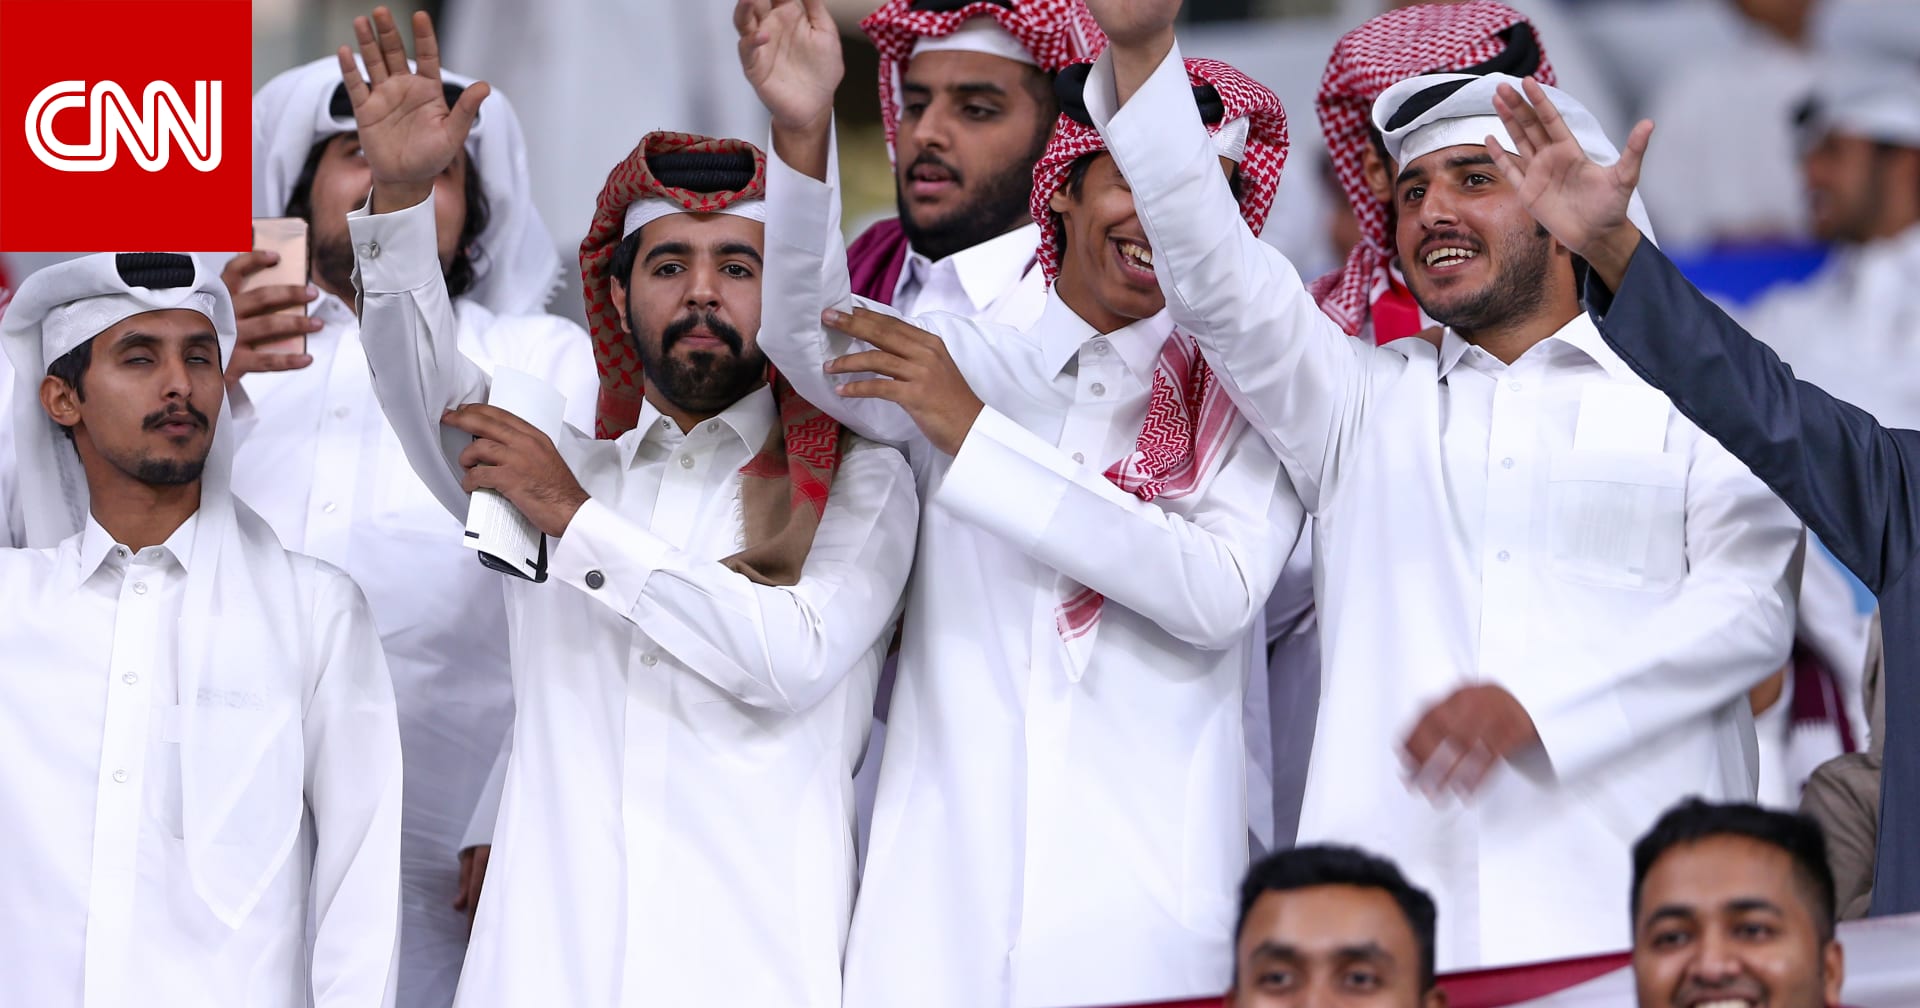 فيديو لاحتفال مشجع سعودي بين الجماهير القطرية يُثير تفاعلا على تويتر - CNN Arabic